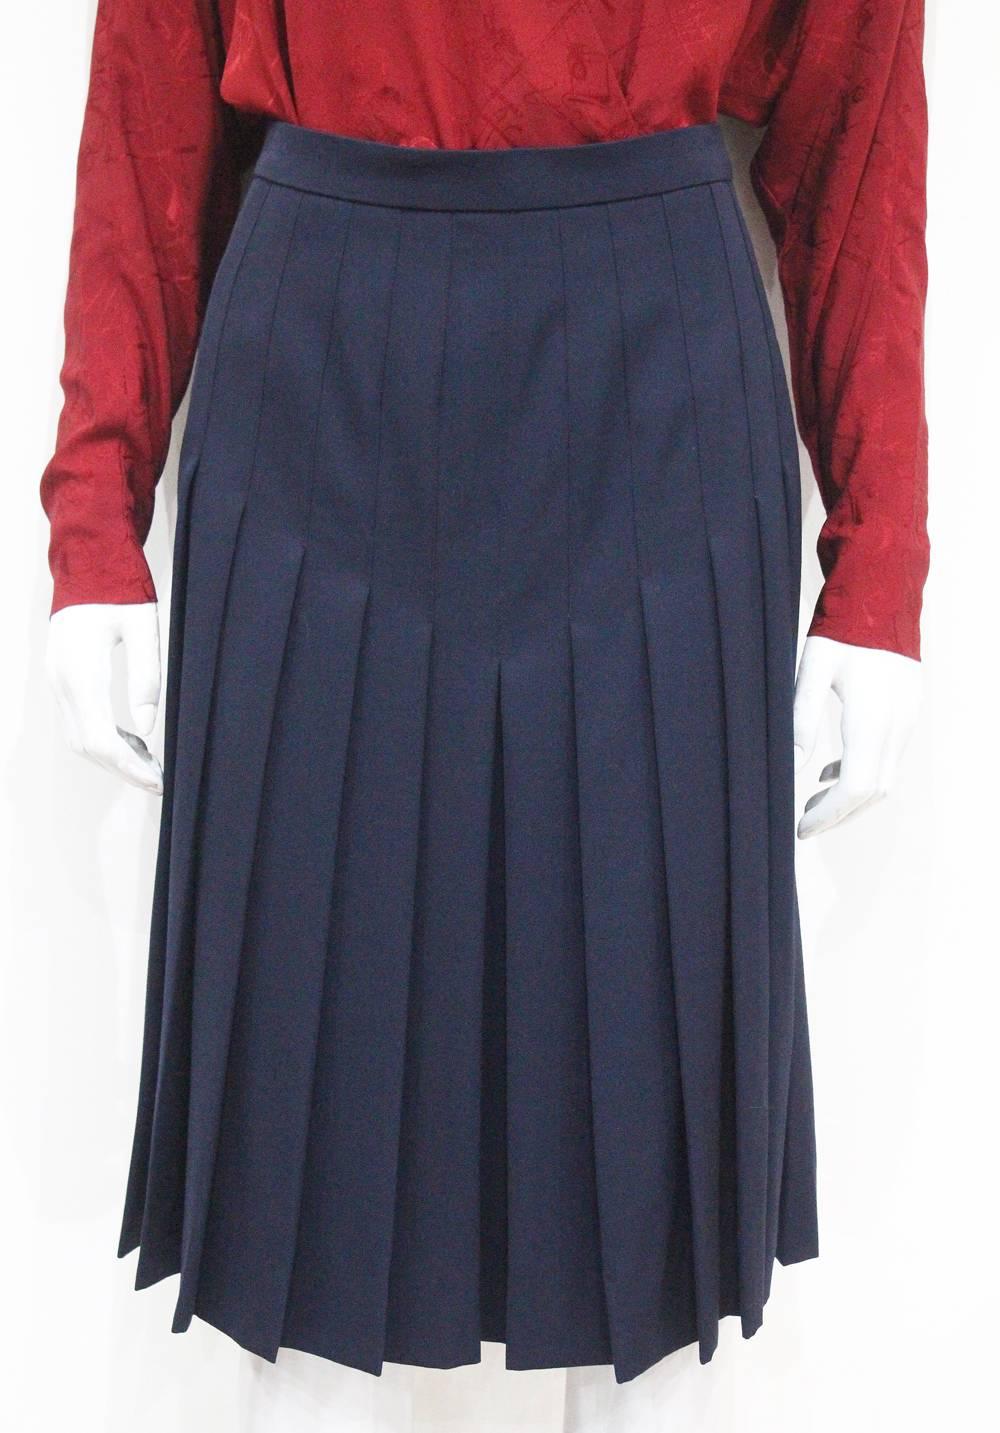 Women's Hermes pleated skirt and silk blouse ensemble, c. 1970s